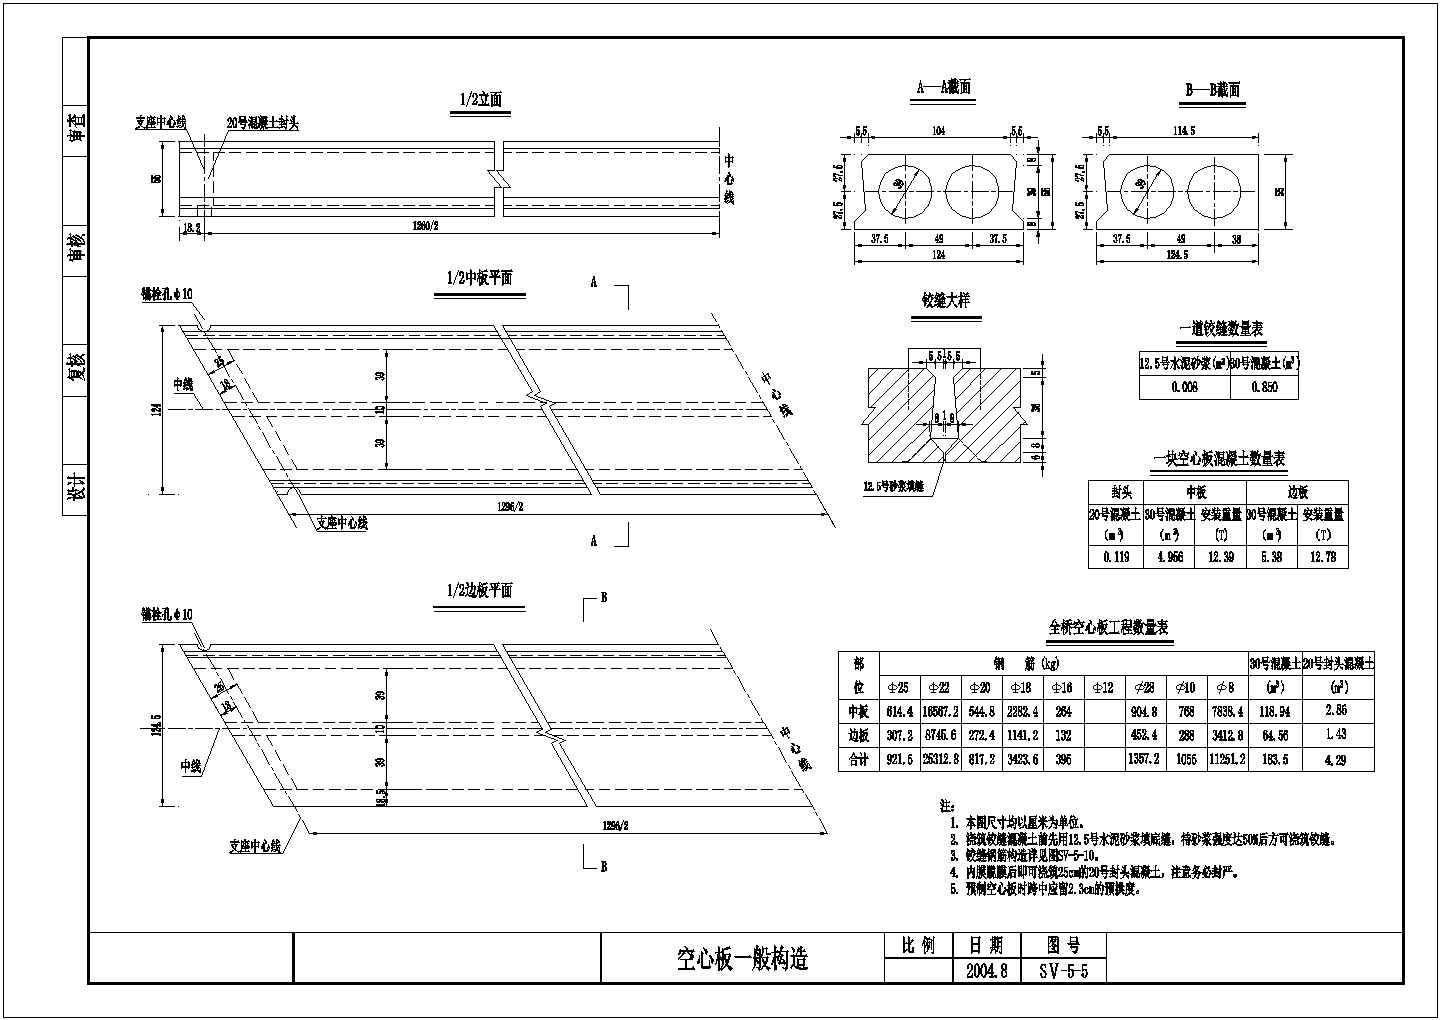 【山东】7x30m斜交钢筋混凝土板桥全套施工图